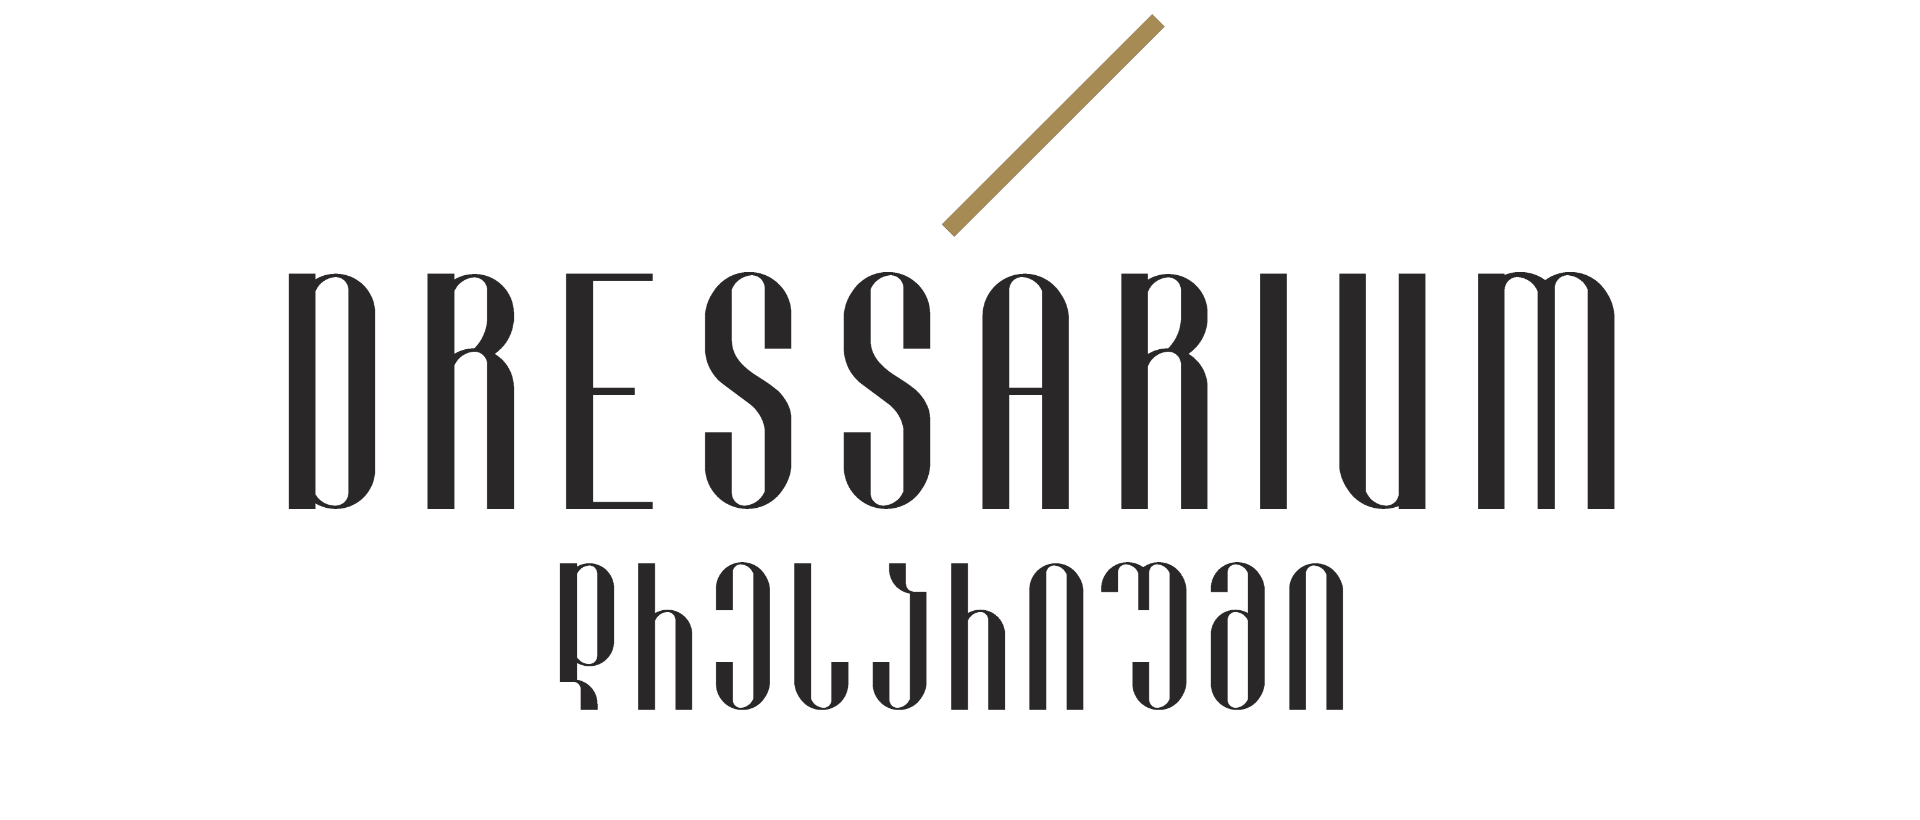 Dressarium